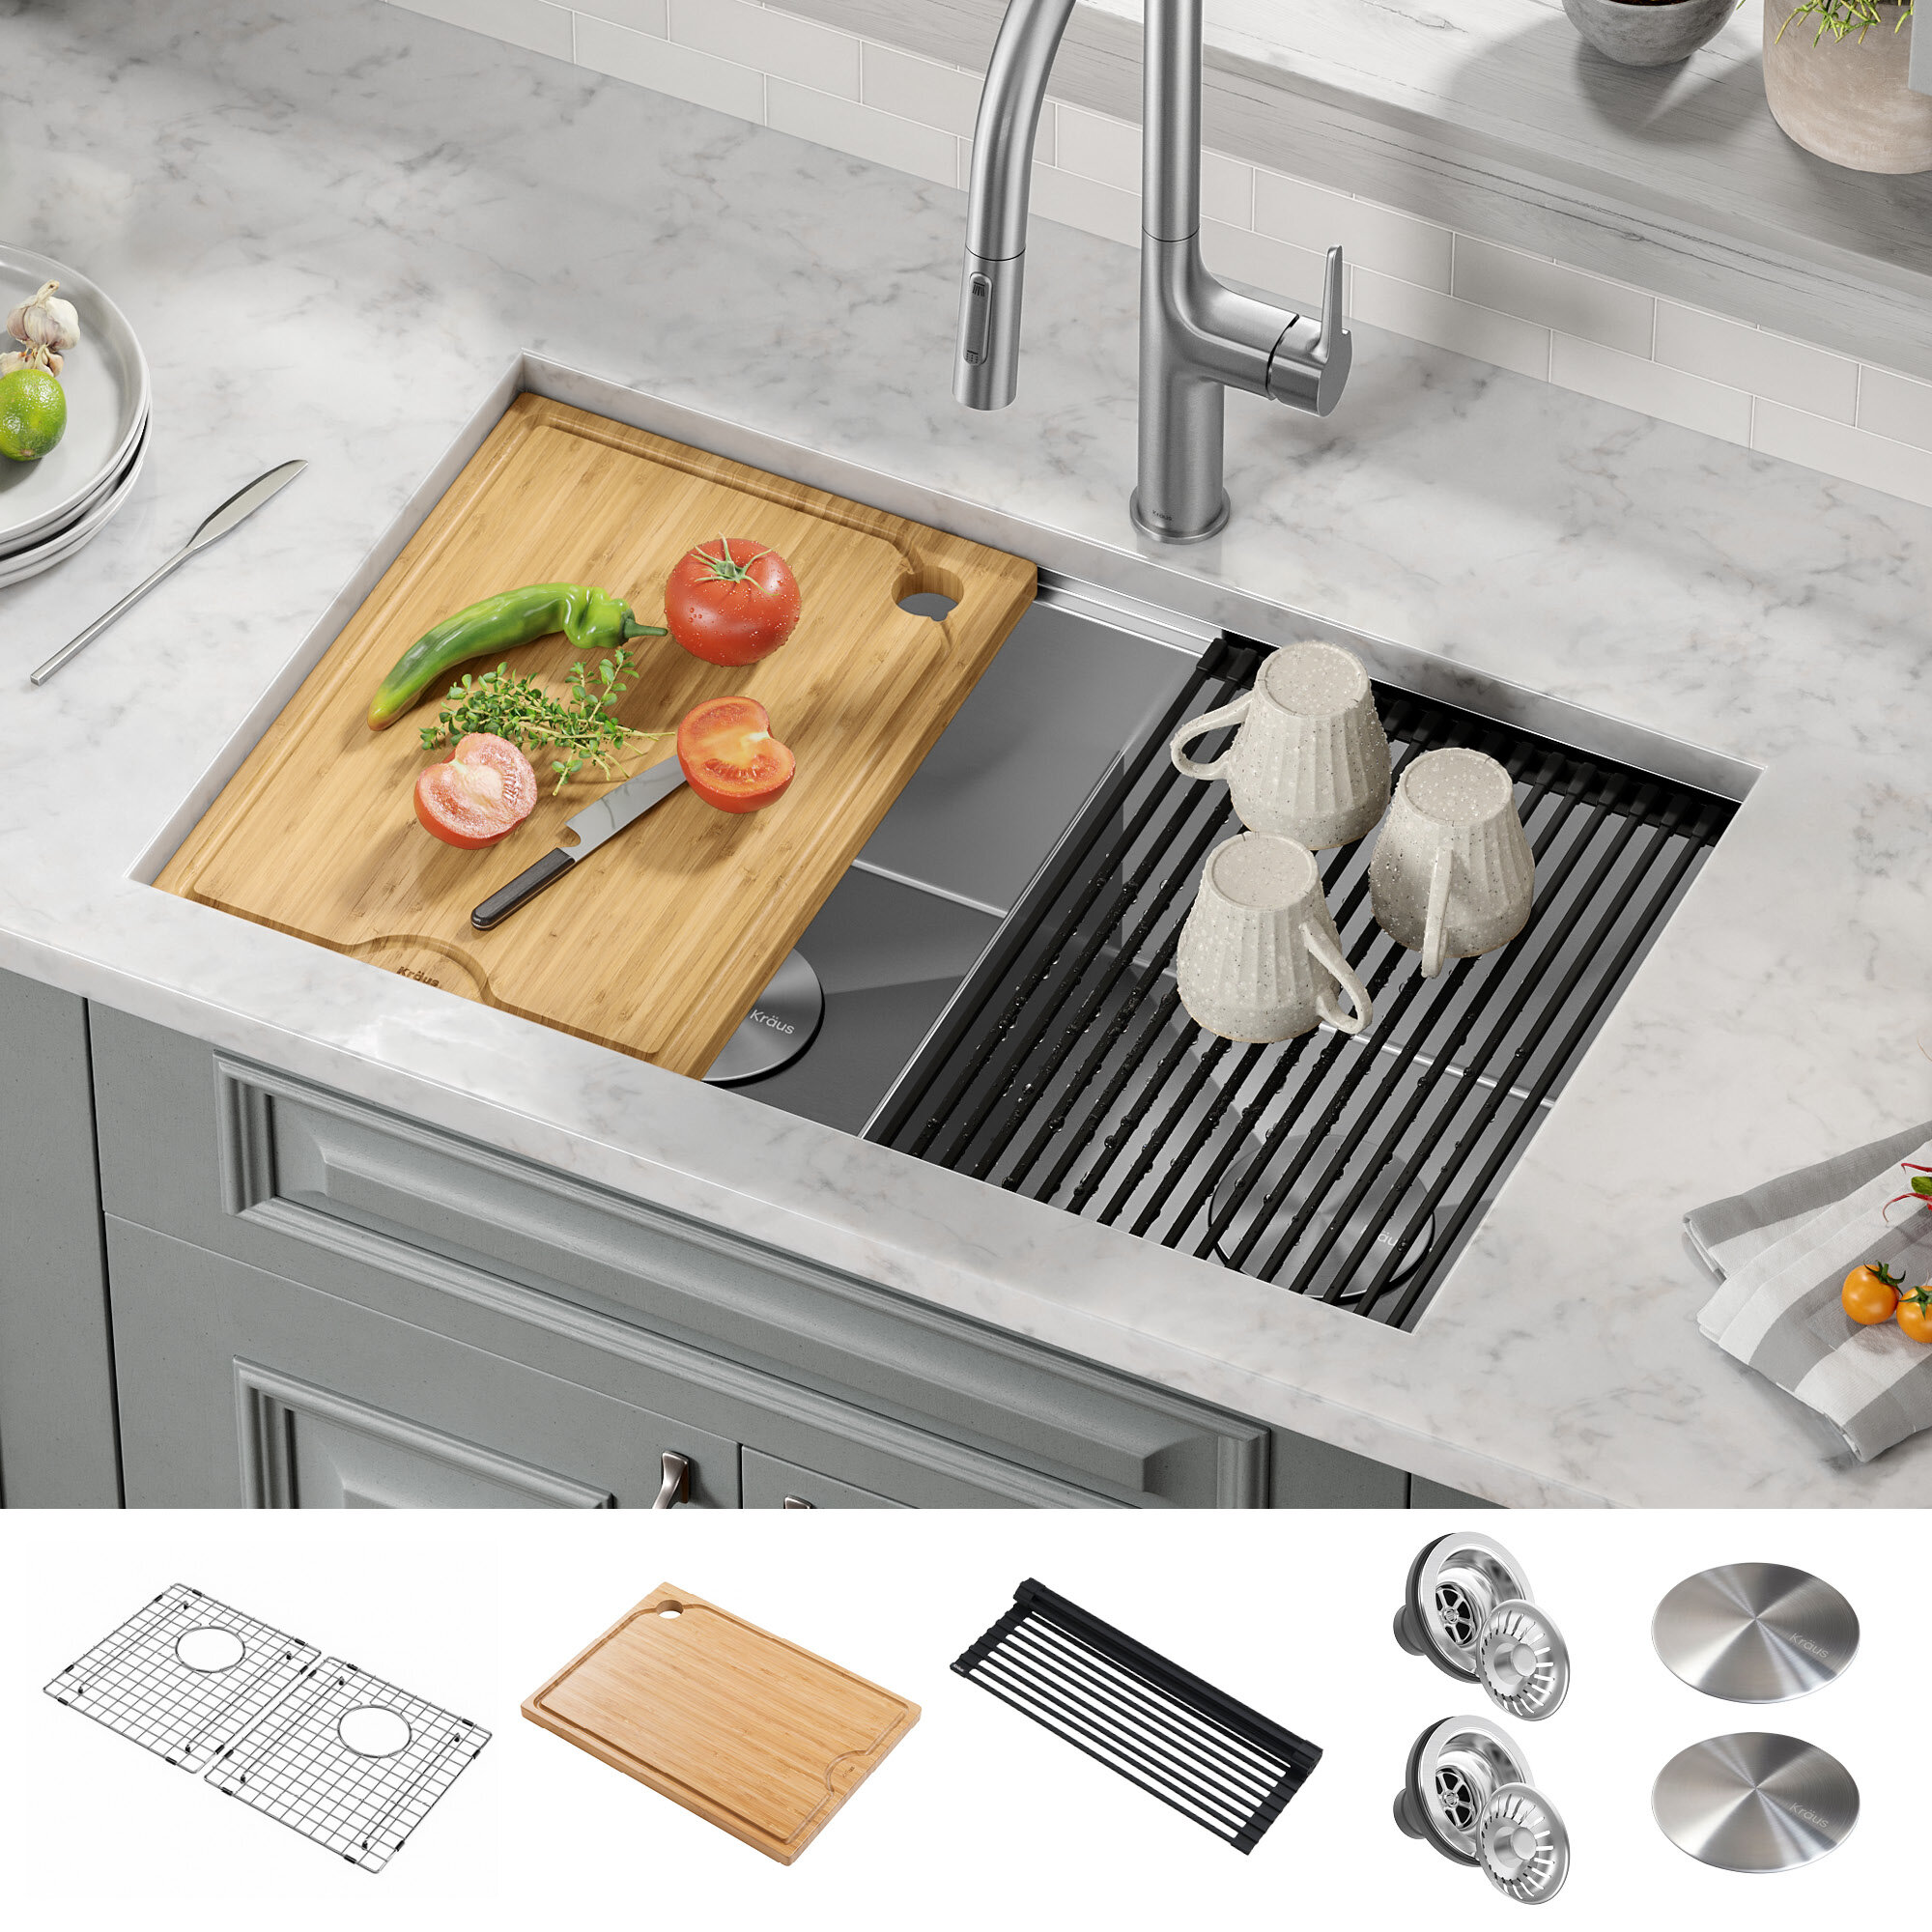 https://assets.wfcdn.com/im/04188196/compr-r85/1709/170927187/kraus-kore-30-l-undermount-workstation-16-gauge-stainless-steel-double-bowl-kitchen-sink.jpg